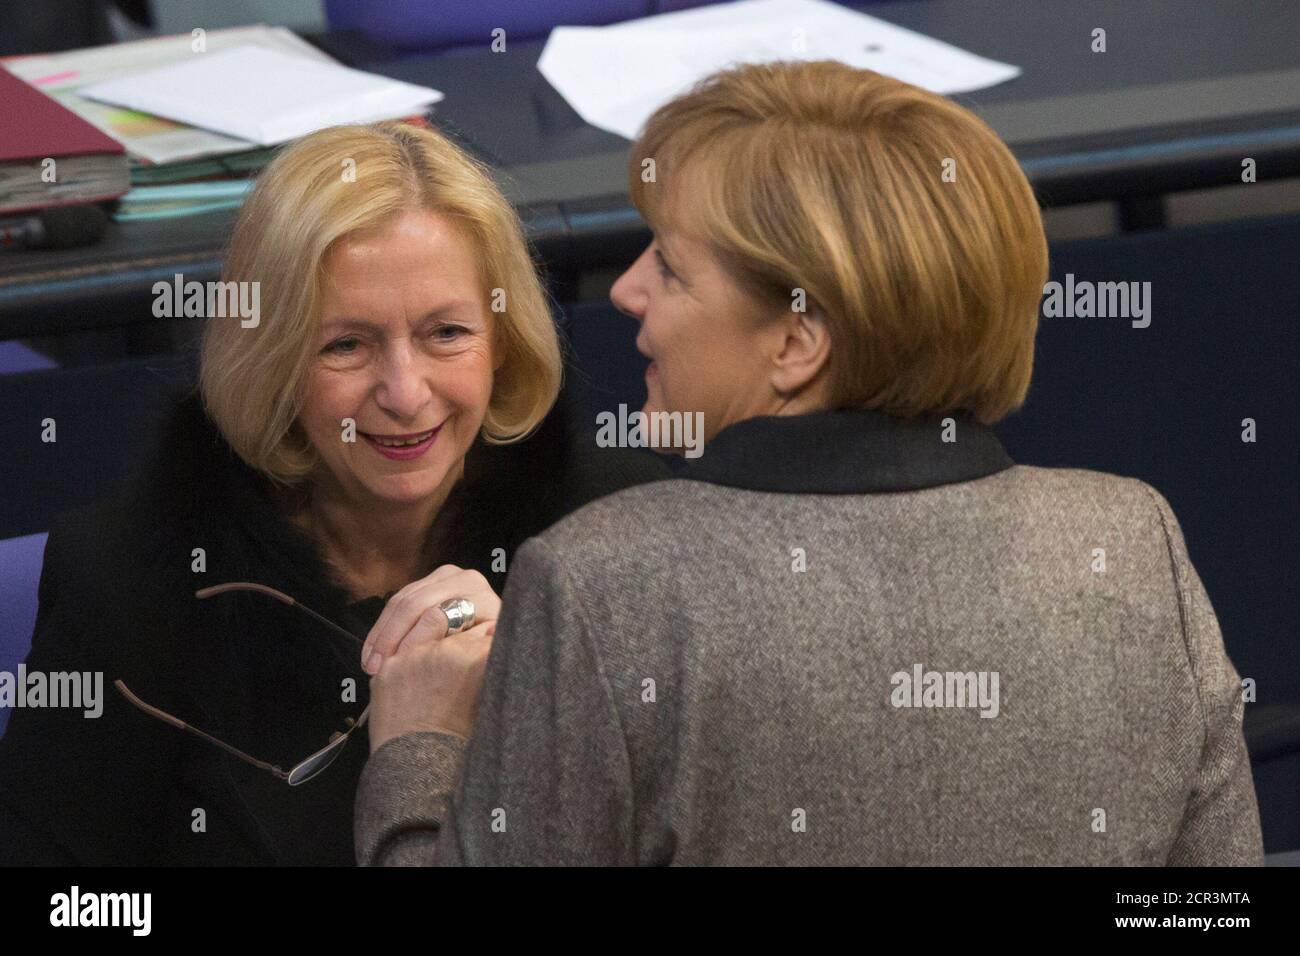 La canciller alemana Angela Merkel (R) habla con la nueva ministra de Educación Johanna Wanka durante una sesión del Bundestag, la cámara baja del parlamento en Berlín el 21 de febrero de 2013. REUTERS/Thomas Peter (ALEMANIA - Tags: POLÍTICA) Foto de stock